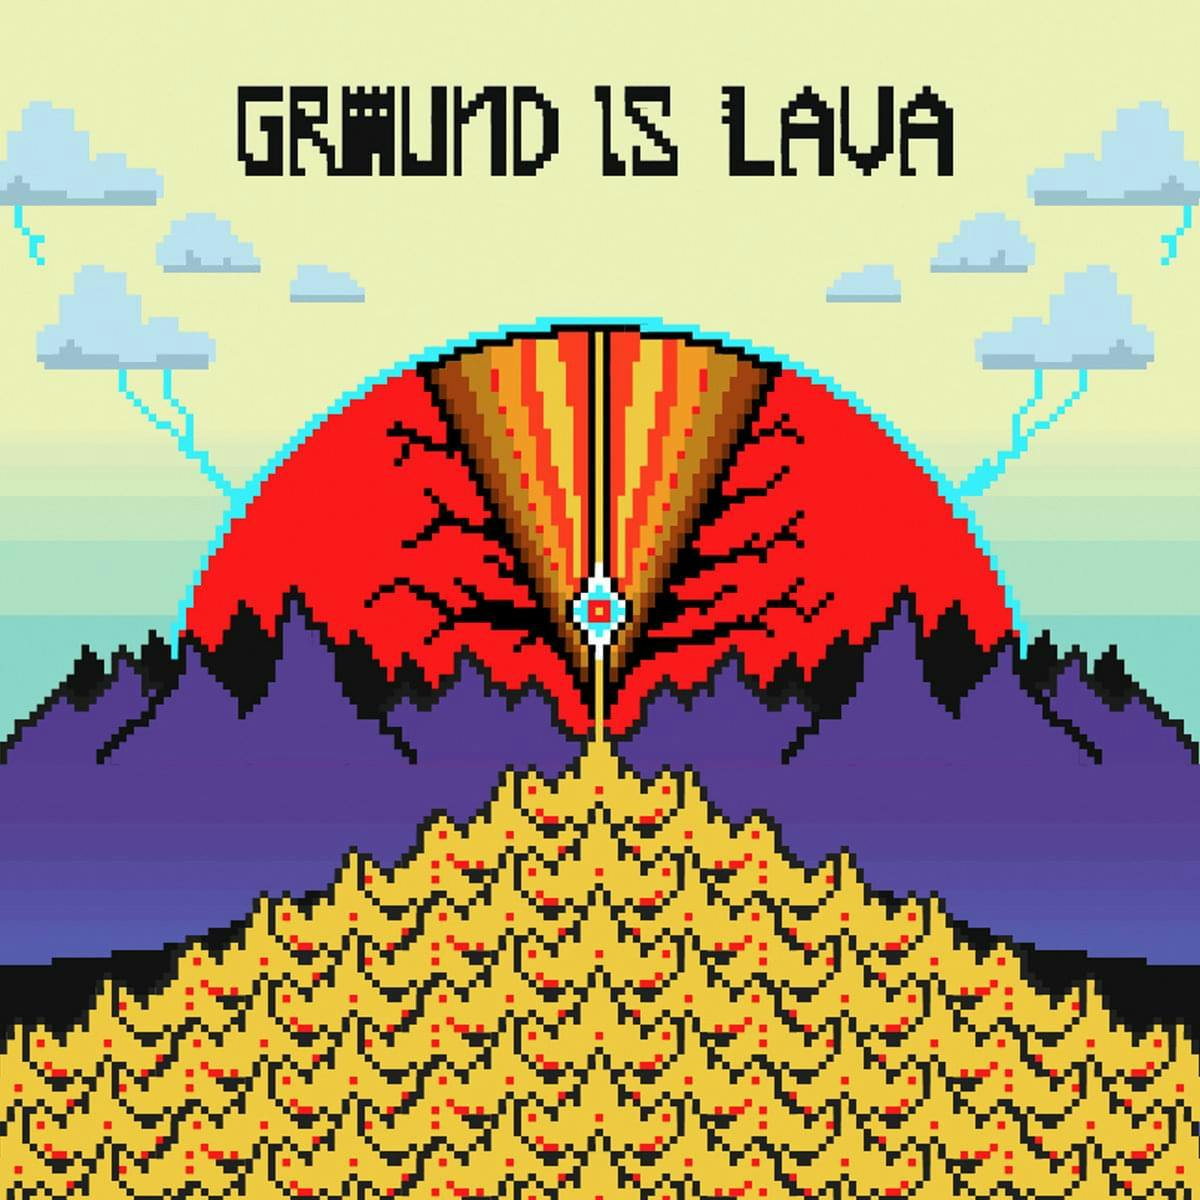 Cover art for groundislava's song: Creeper Shit